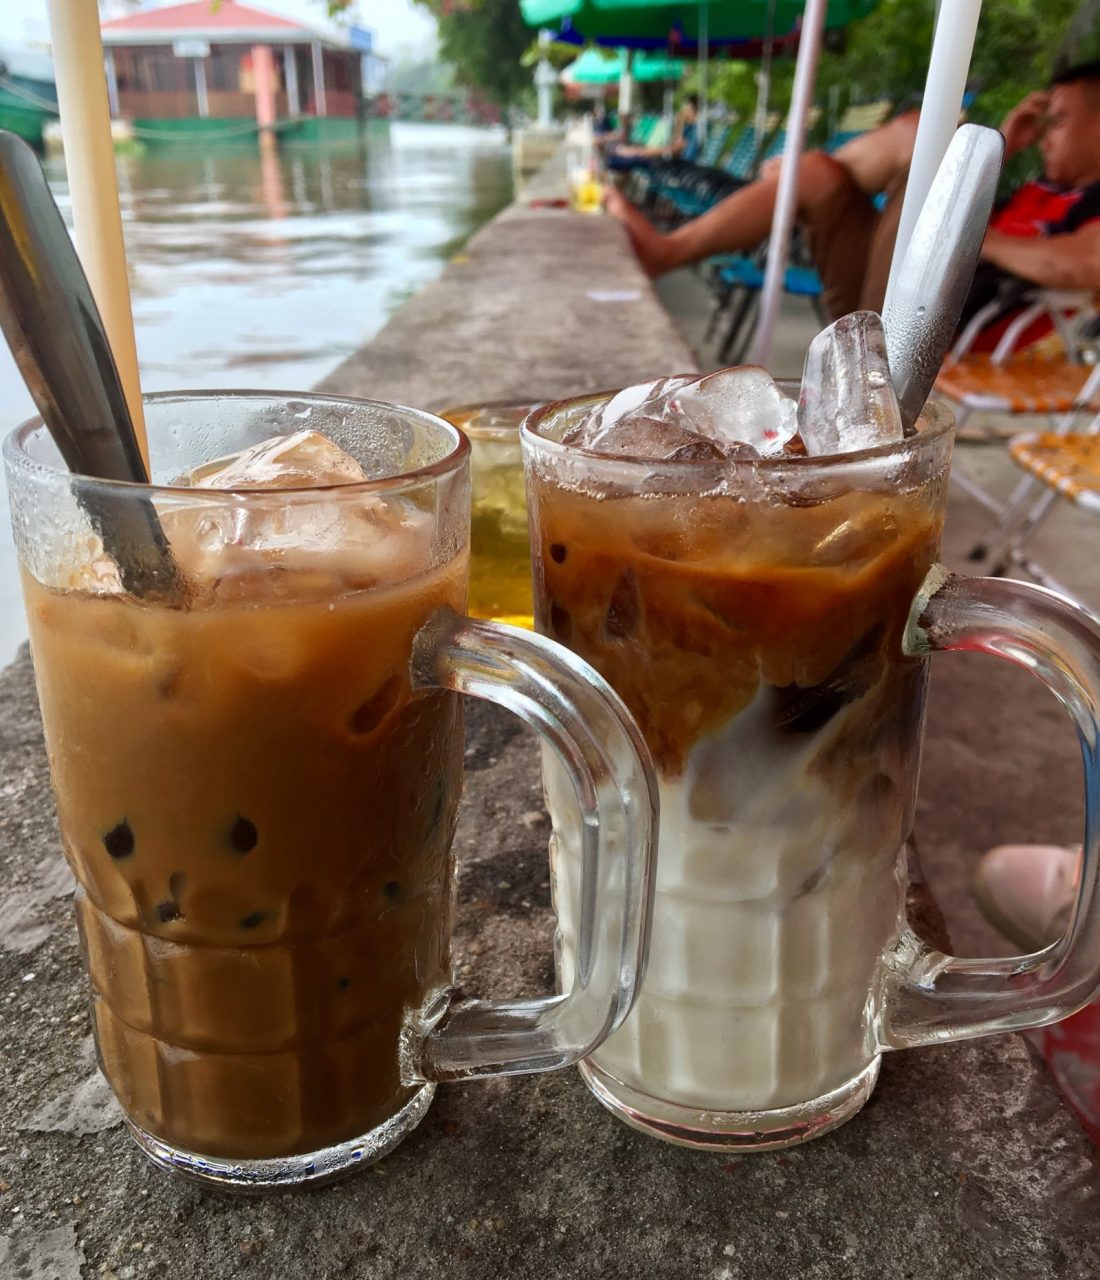 Bạc Xĩu on the right compared to Cà phê sữa đá on the left.